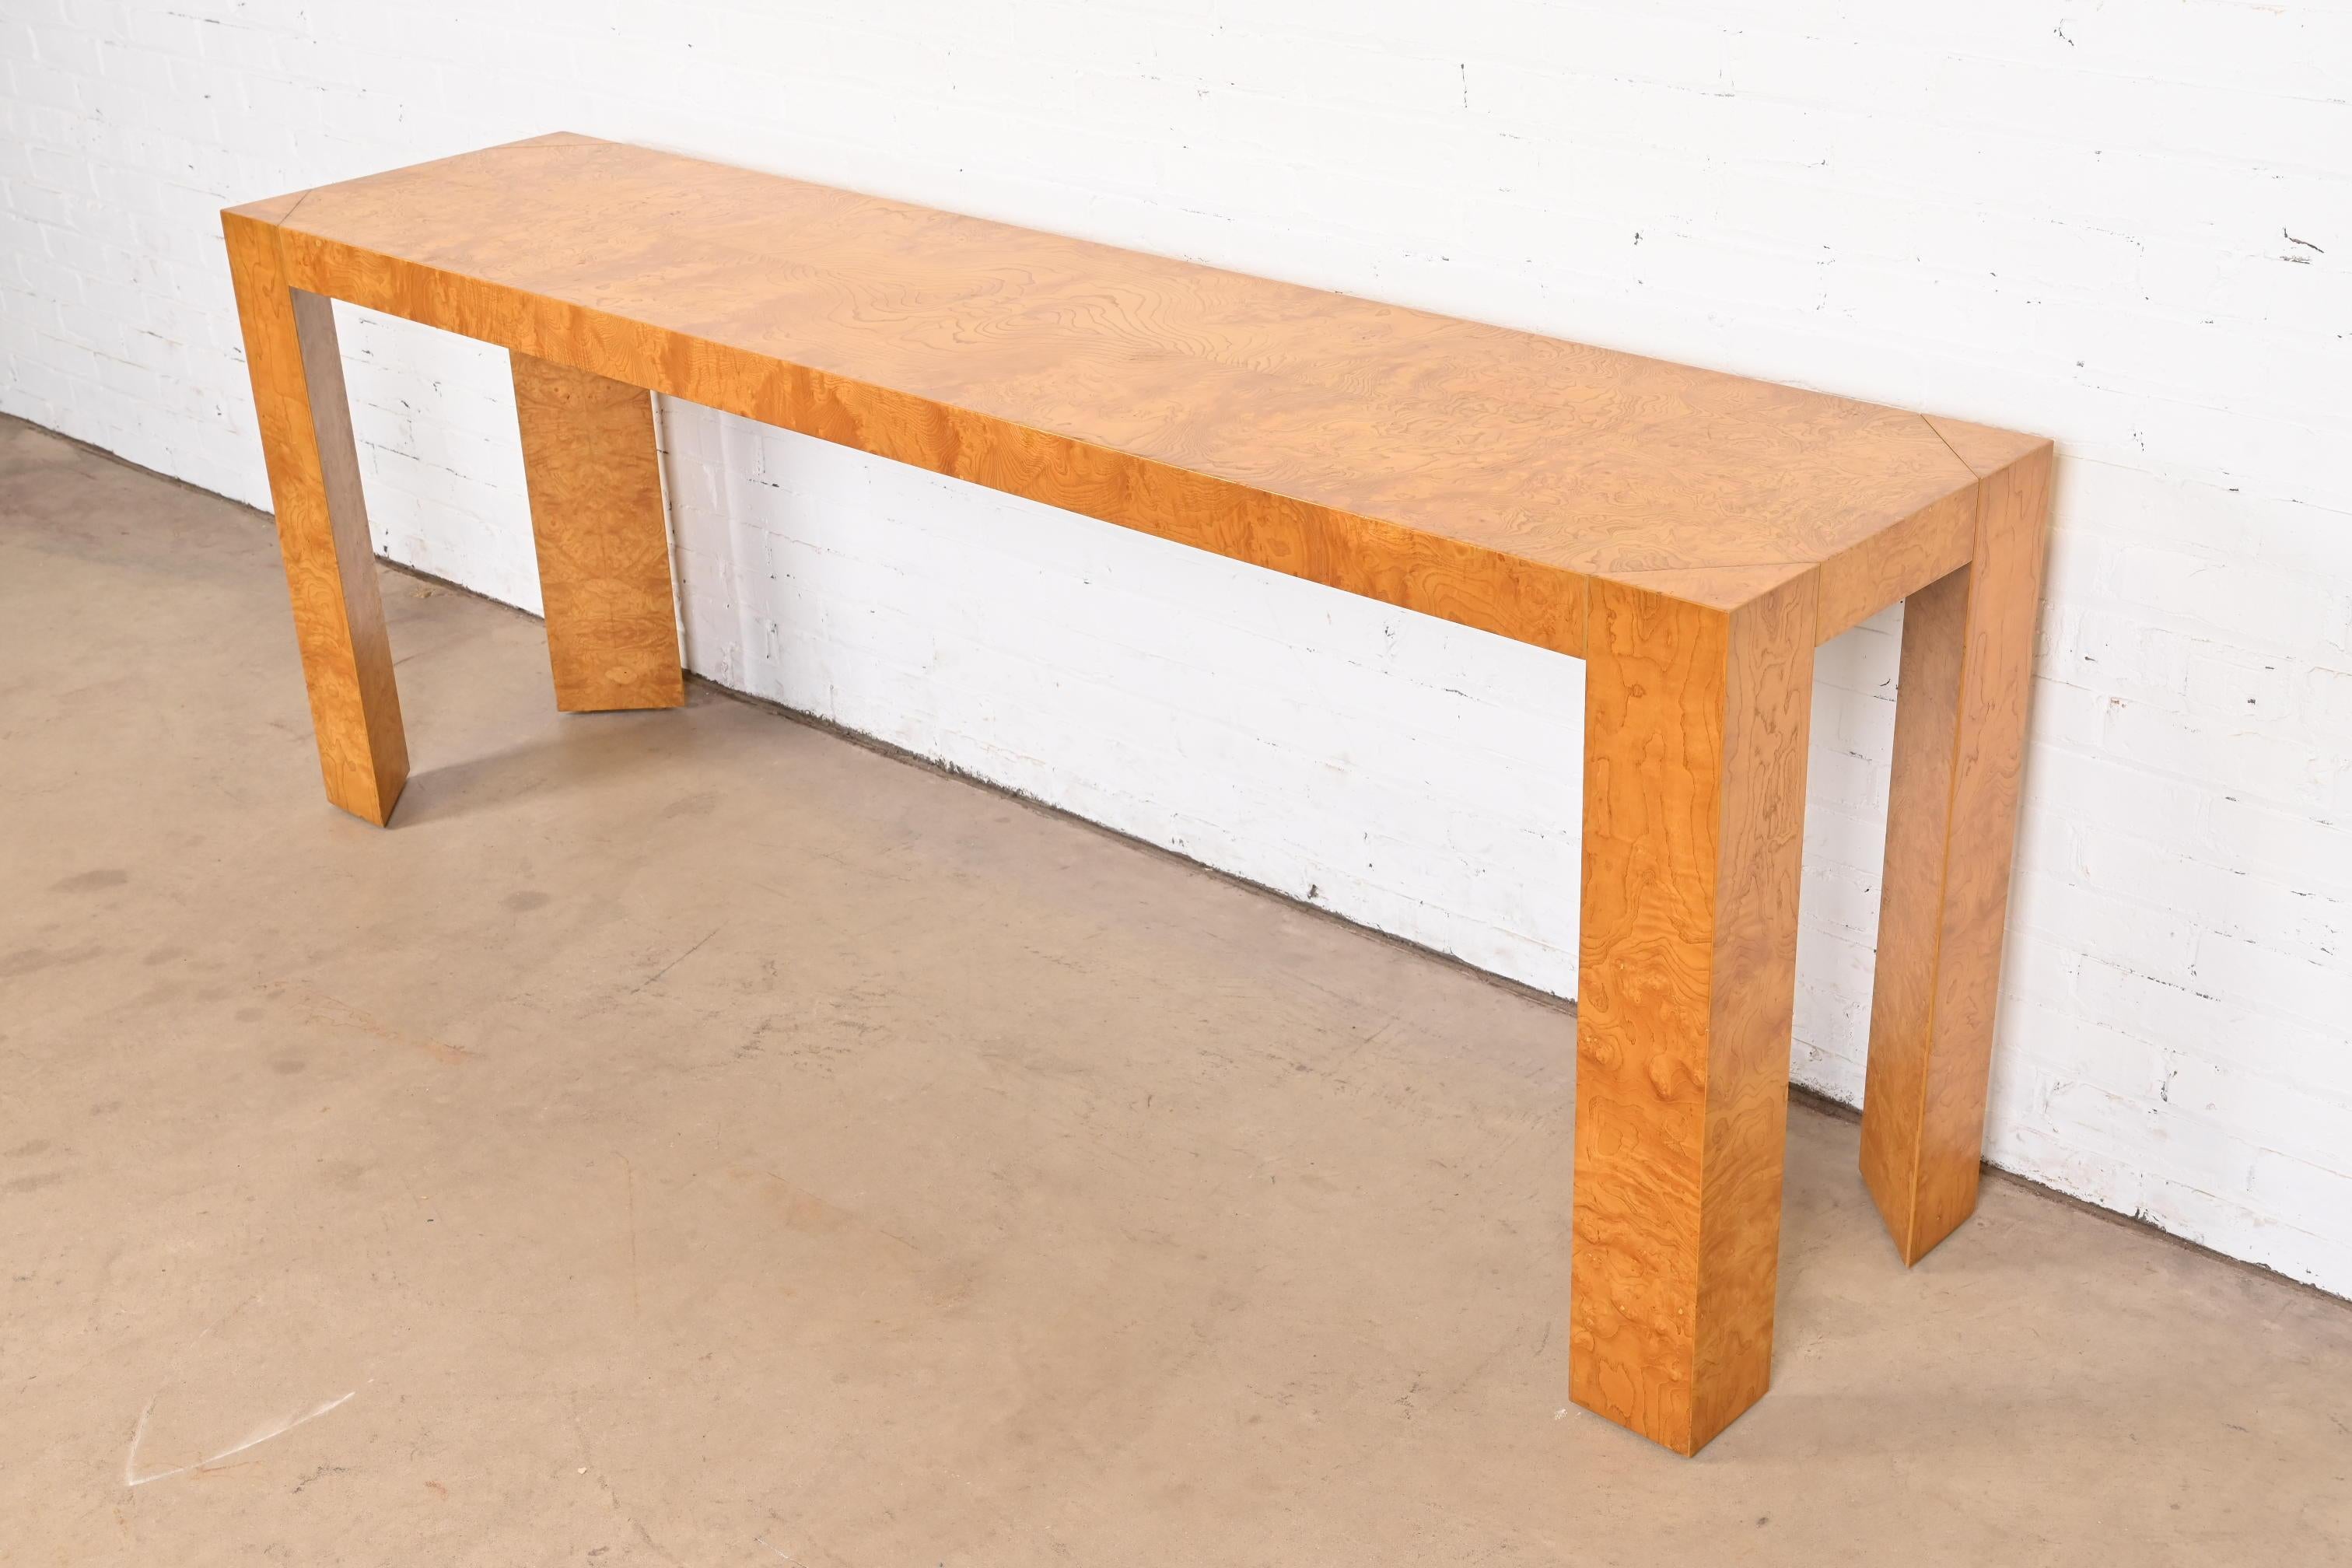 Una magnífica consola o mesa de sofá de madera burl de estilo Moderno de Mediados de Siglo

A la manera de Milo Baughman

EE.UU., alrededor de 1970

Preciosa madera de olivo burilada, con patas triangulares únicas.

Medidas: 84